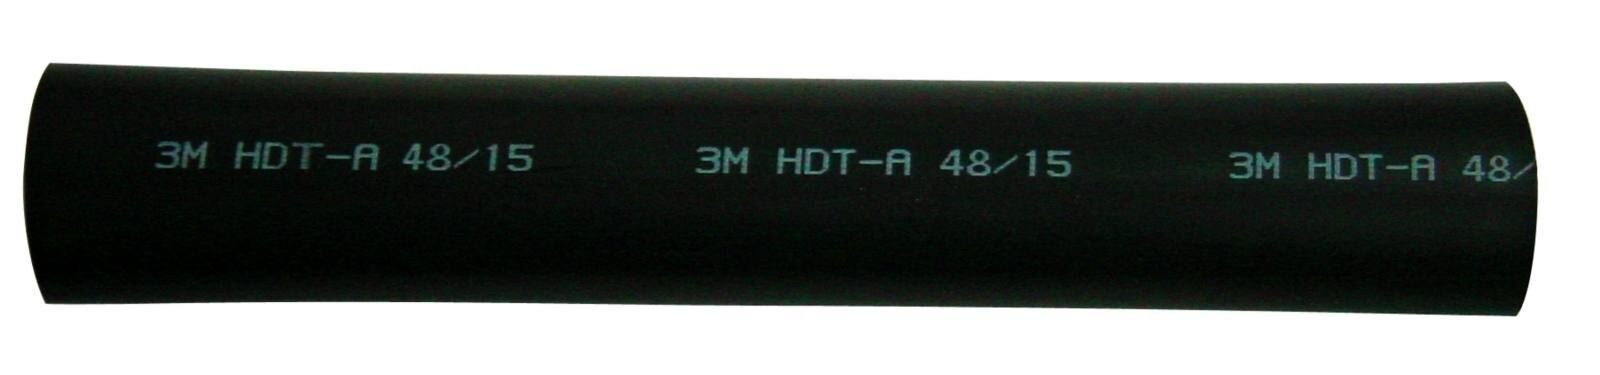 3M HDT-A Tubo termorretráctil de pared gruesa con adhesivo, negro, 48/15 mm, 1 m